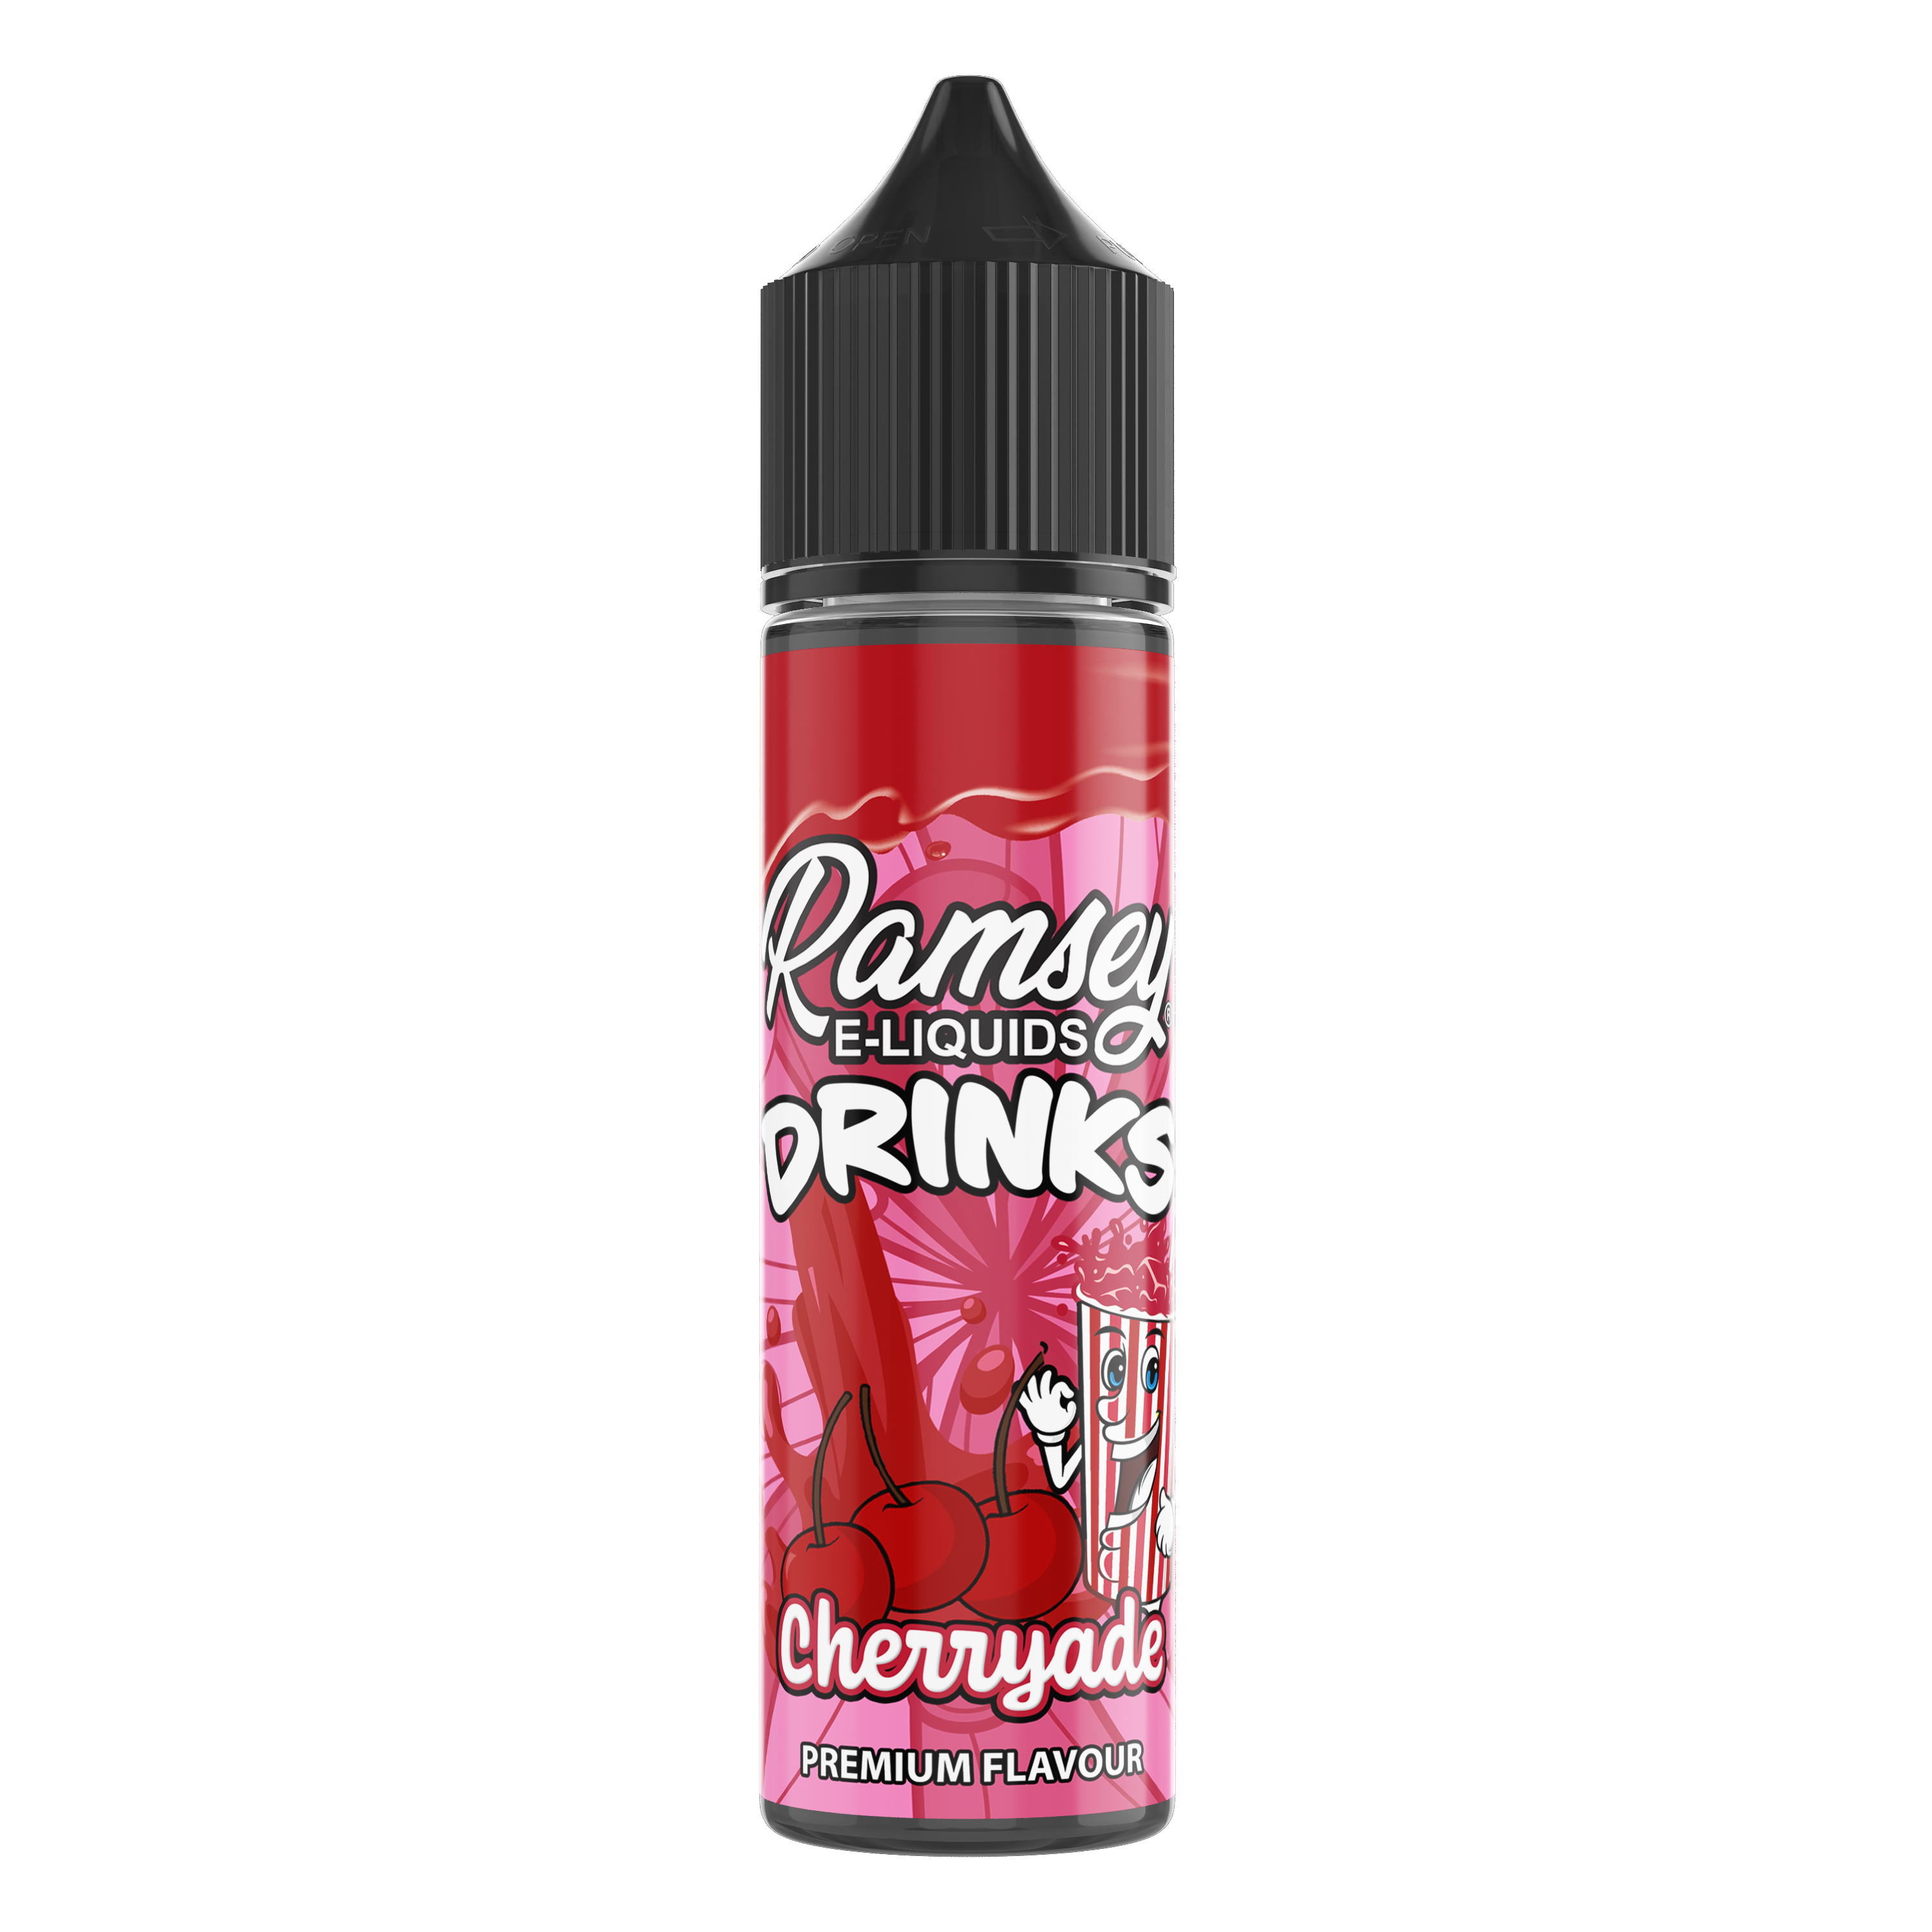 Ramsey E-Liquids Drinks Cherryade 50ml Shortfill